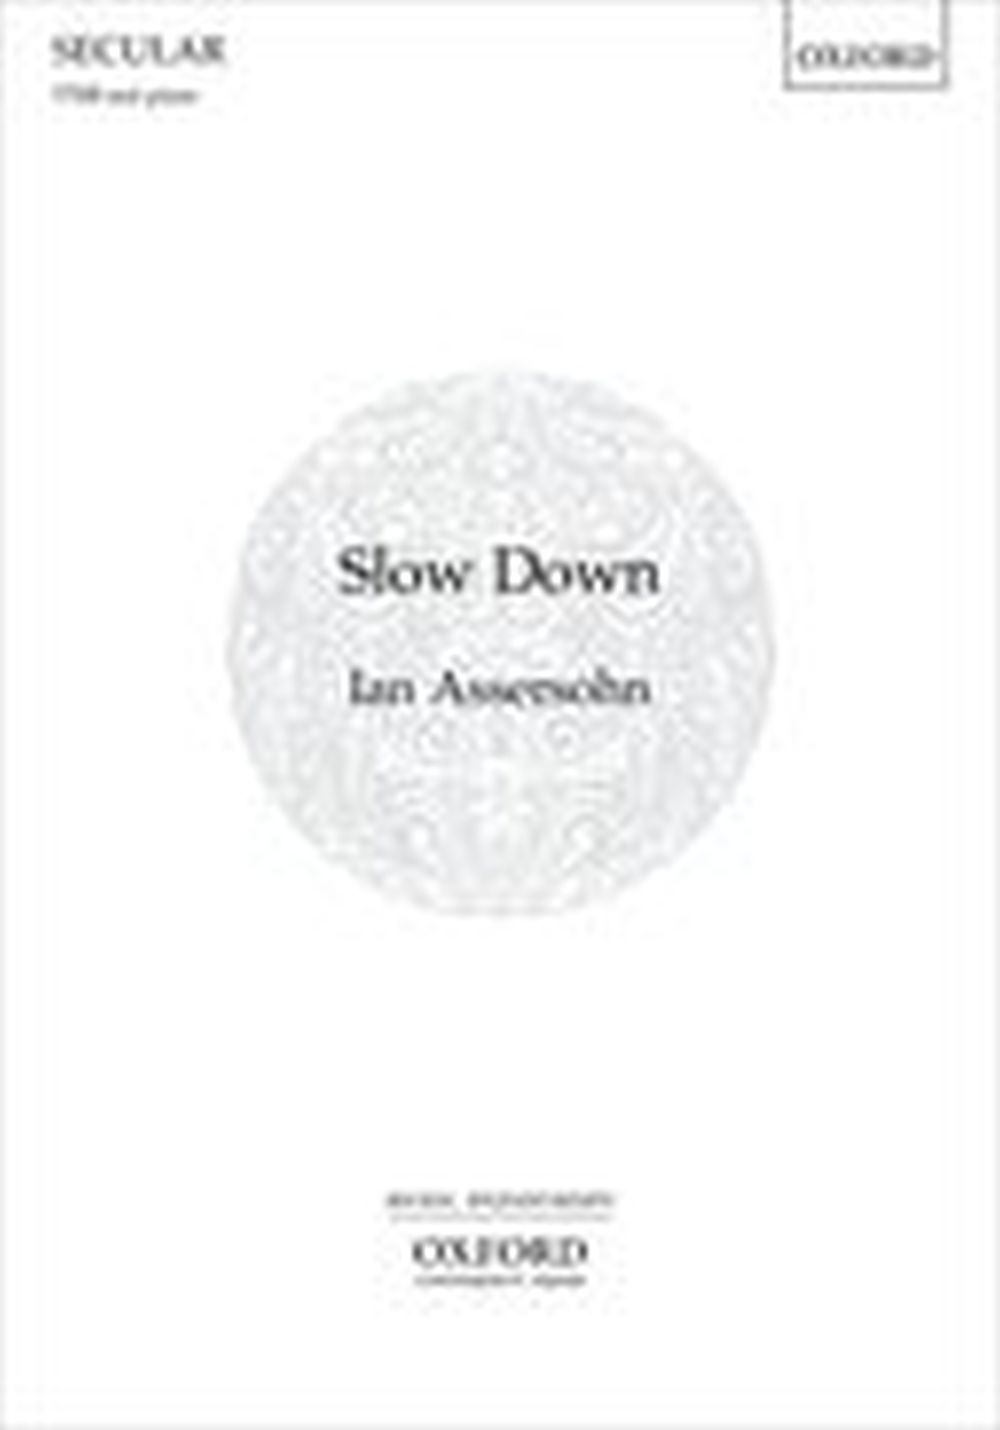 Ian Assersohn: Slow Down: TTBB: Vocal Score